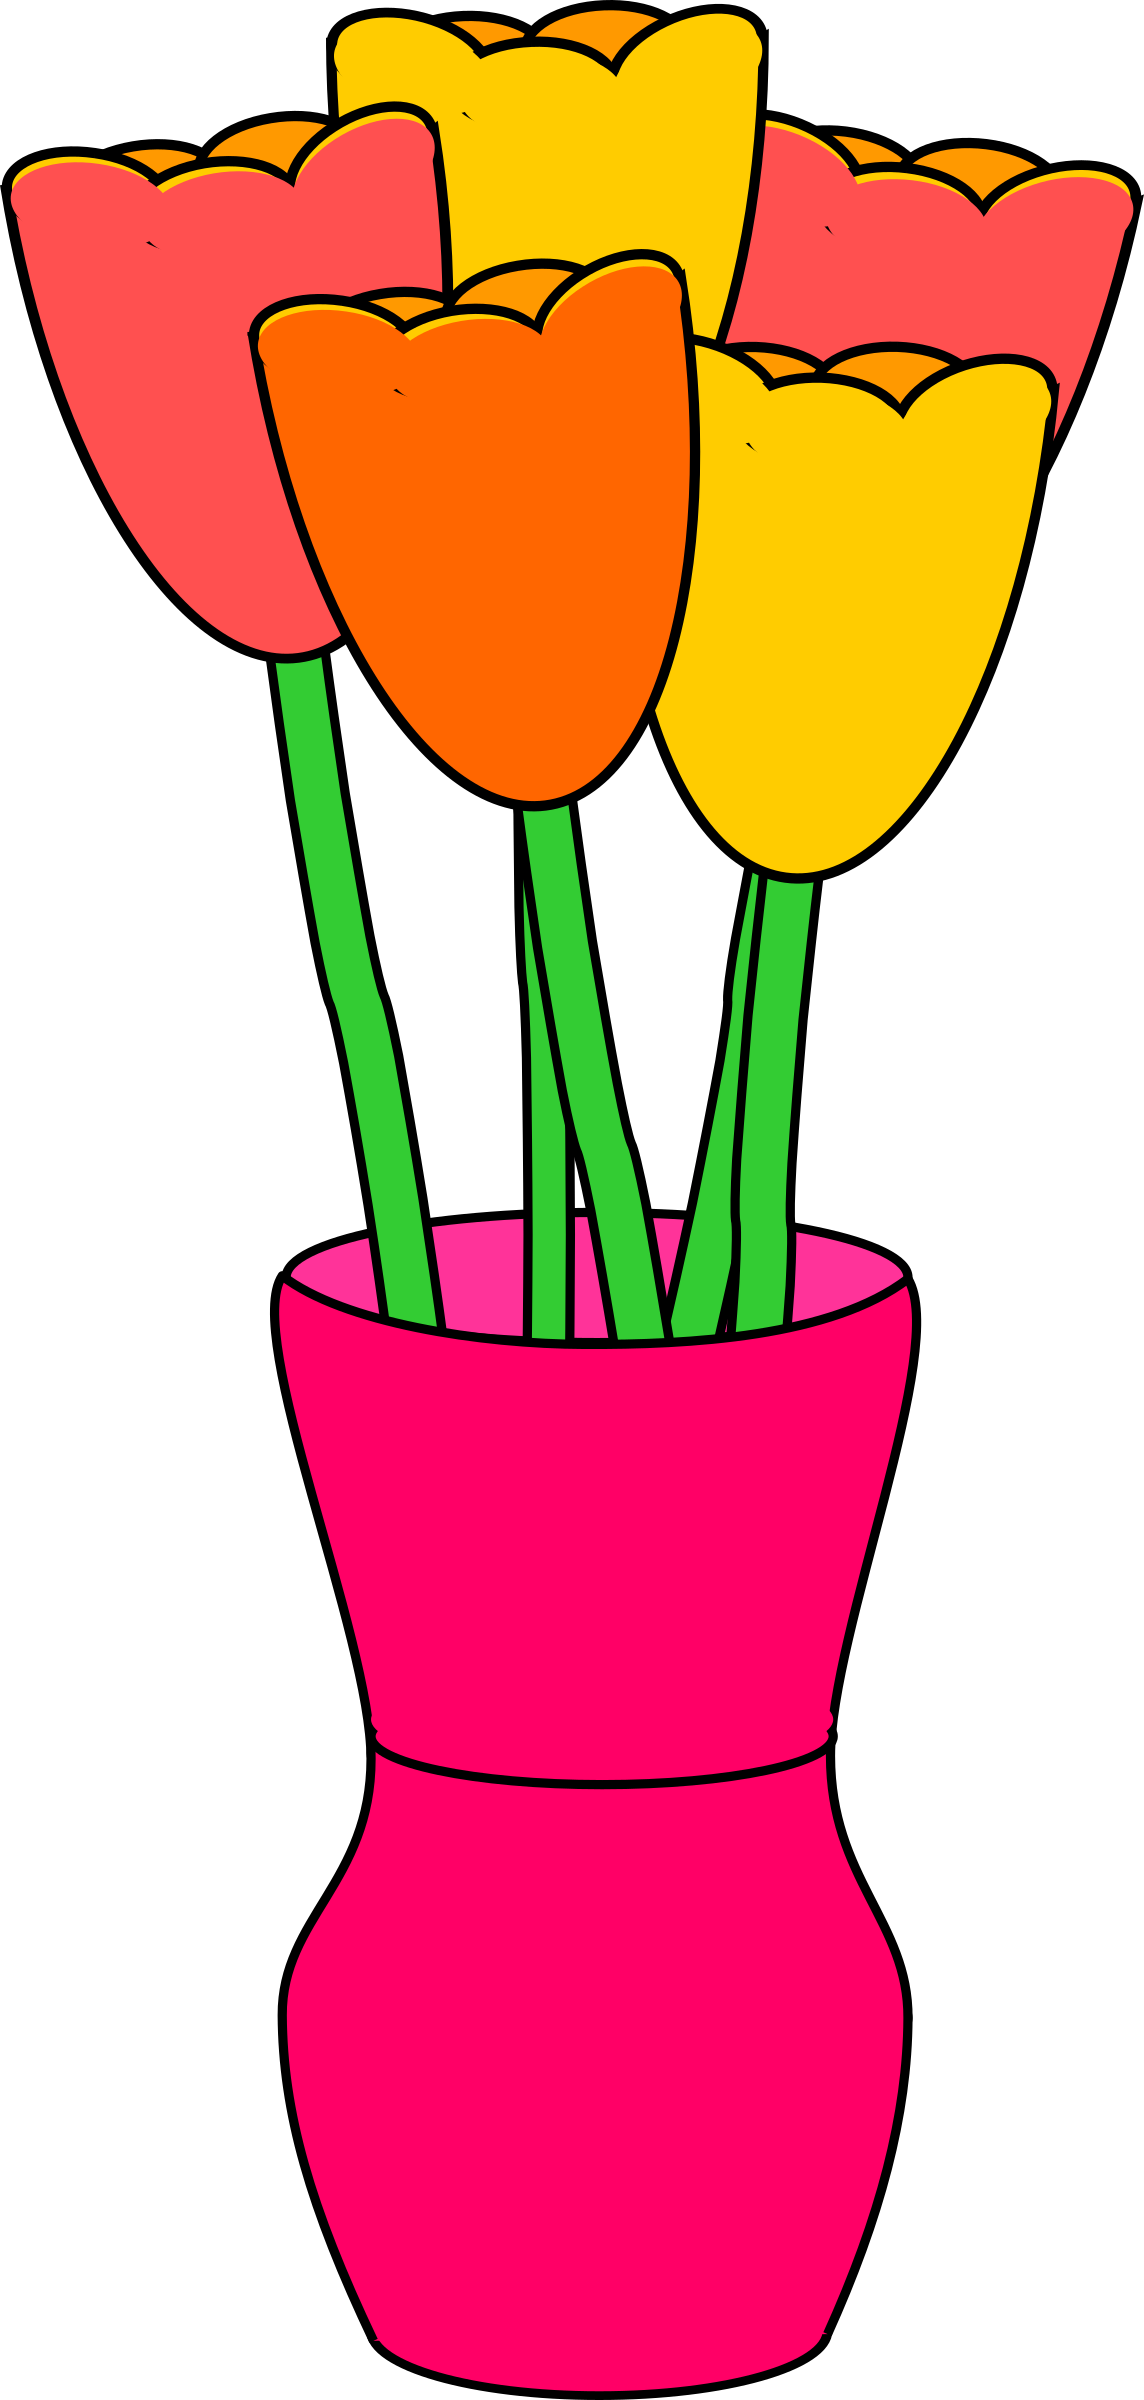 Vase Of Multicolored Tulips - Tulip In Vase Clipart (1144x2400)